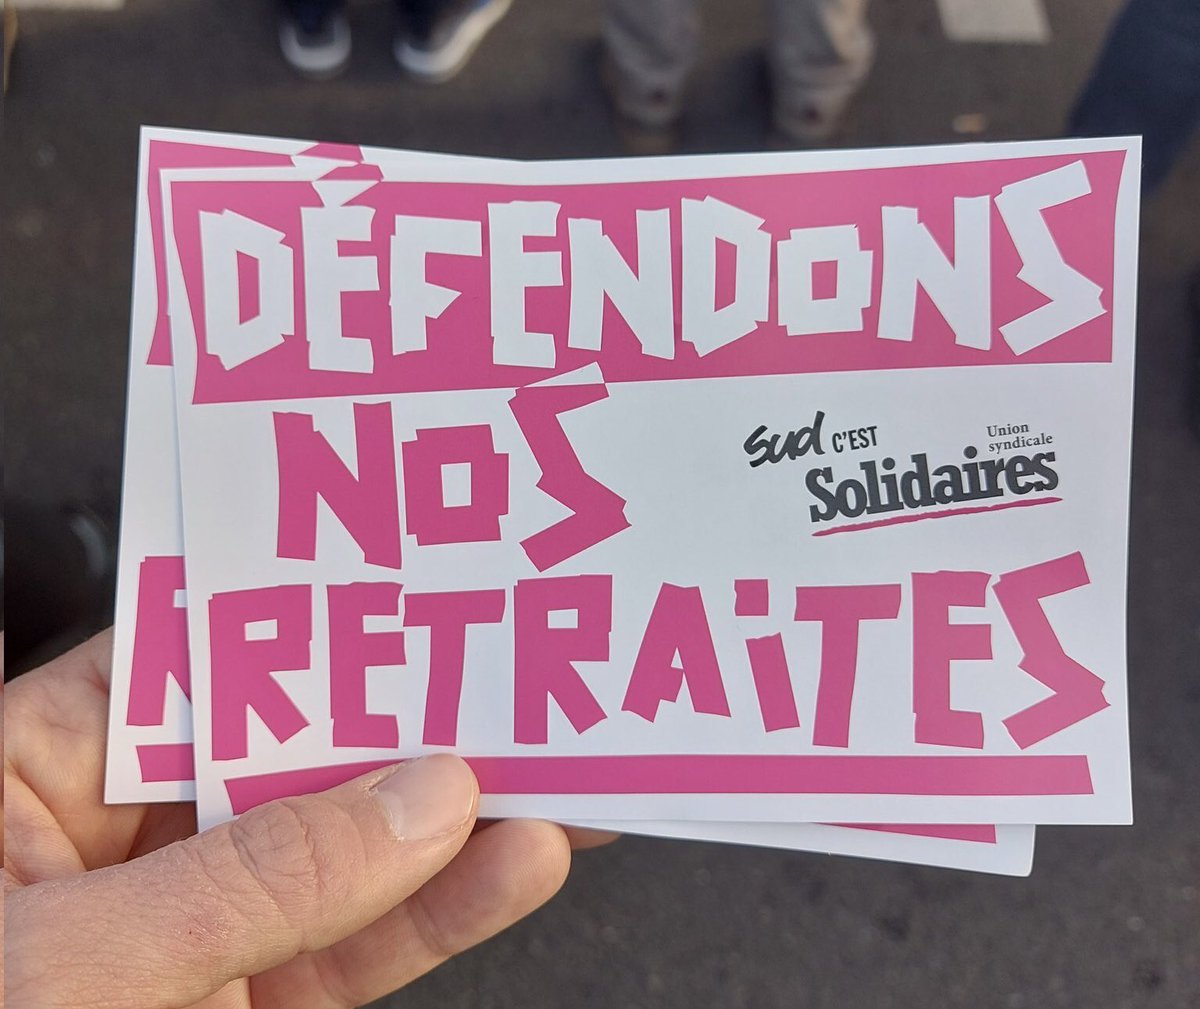 📣En grève, en manif pour défendre nos retraites 
#16fevrier 
#ReformeDesRetraites